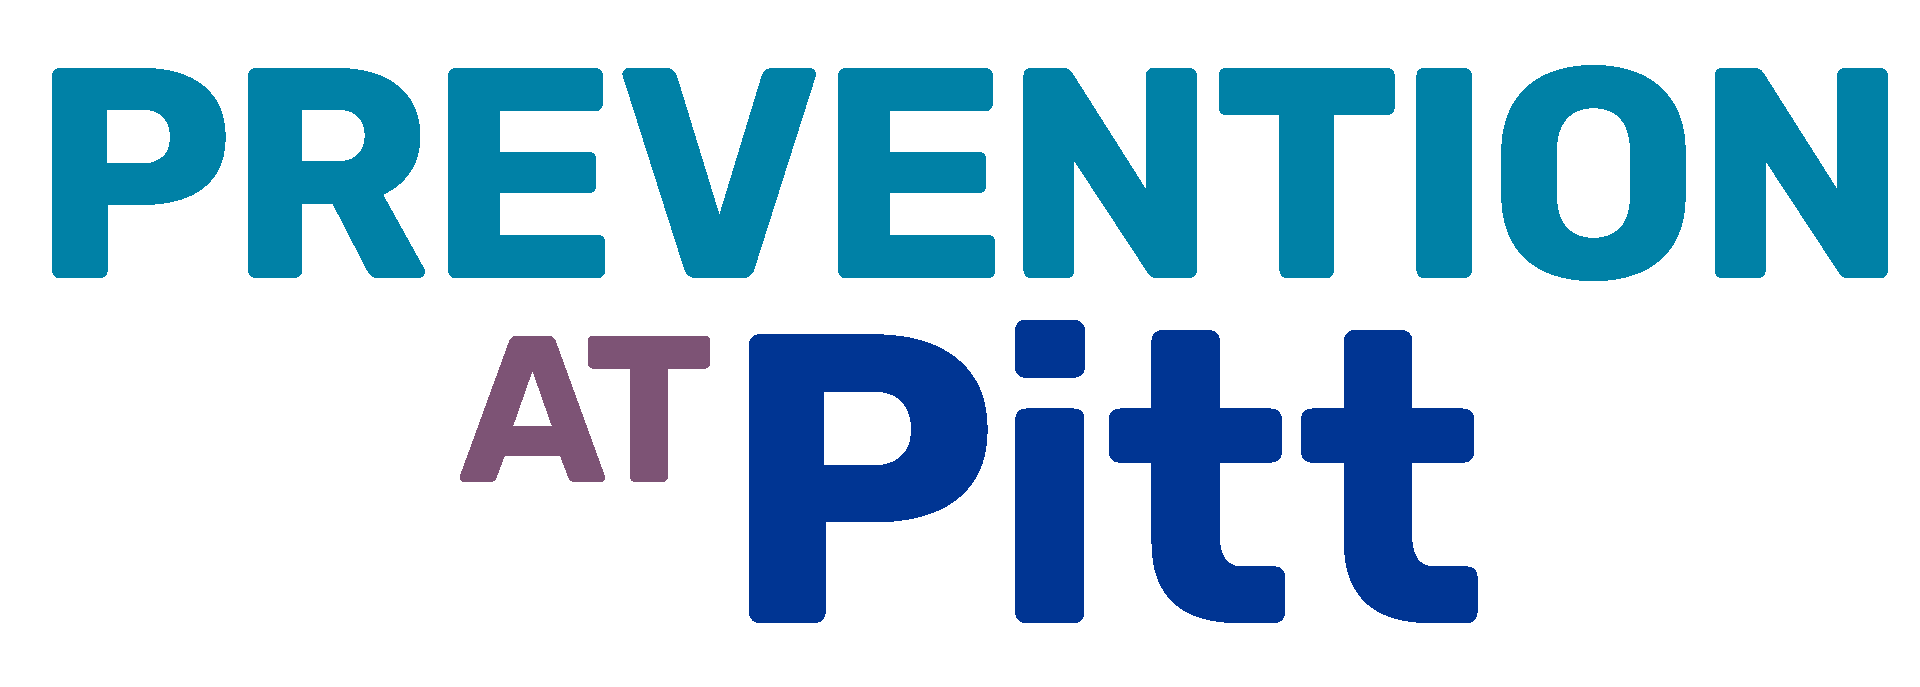 Prevention at Pitt